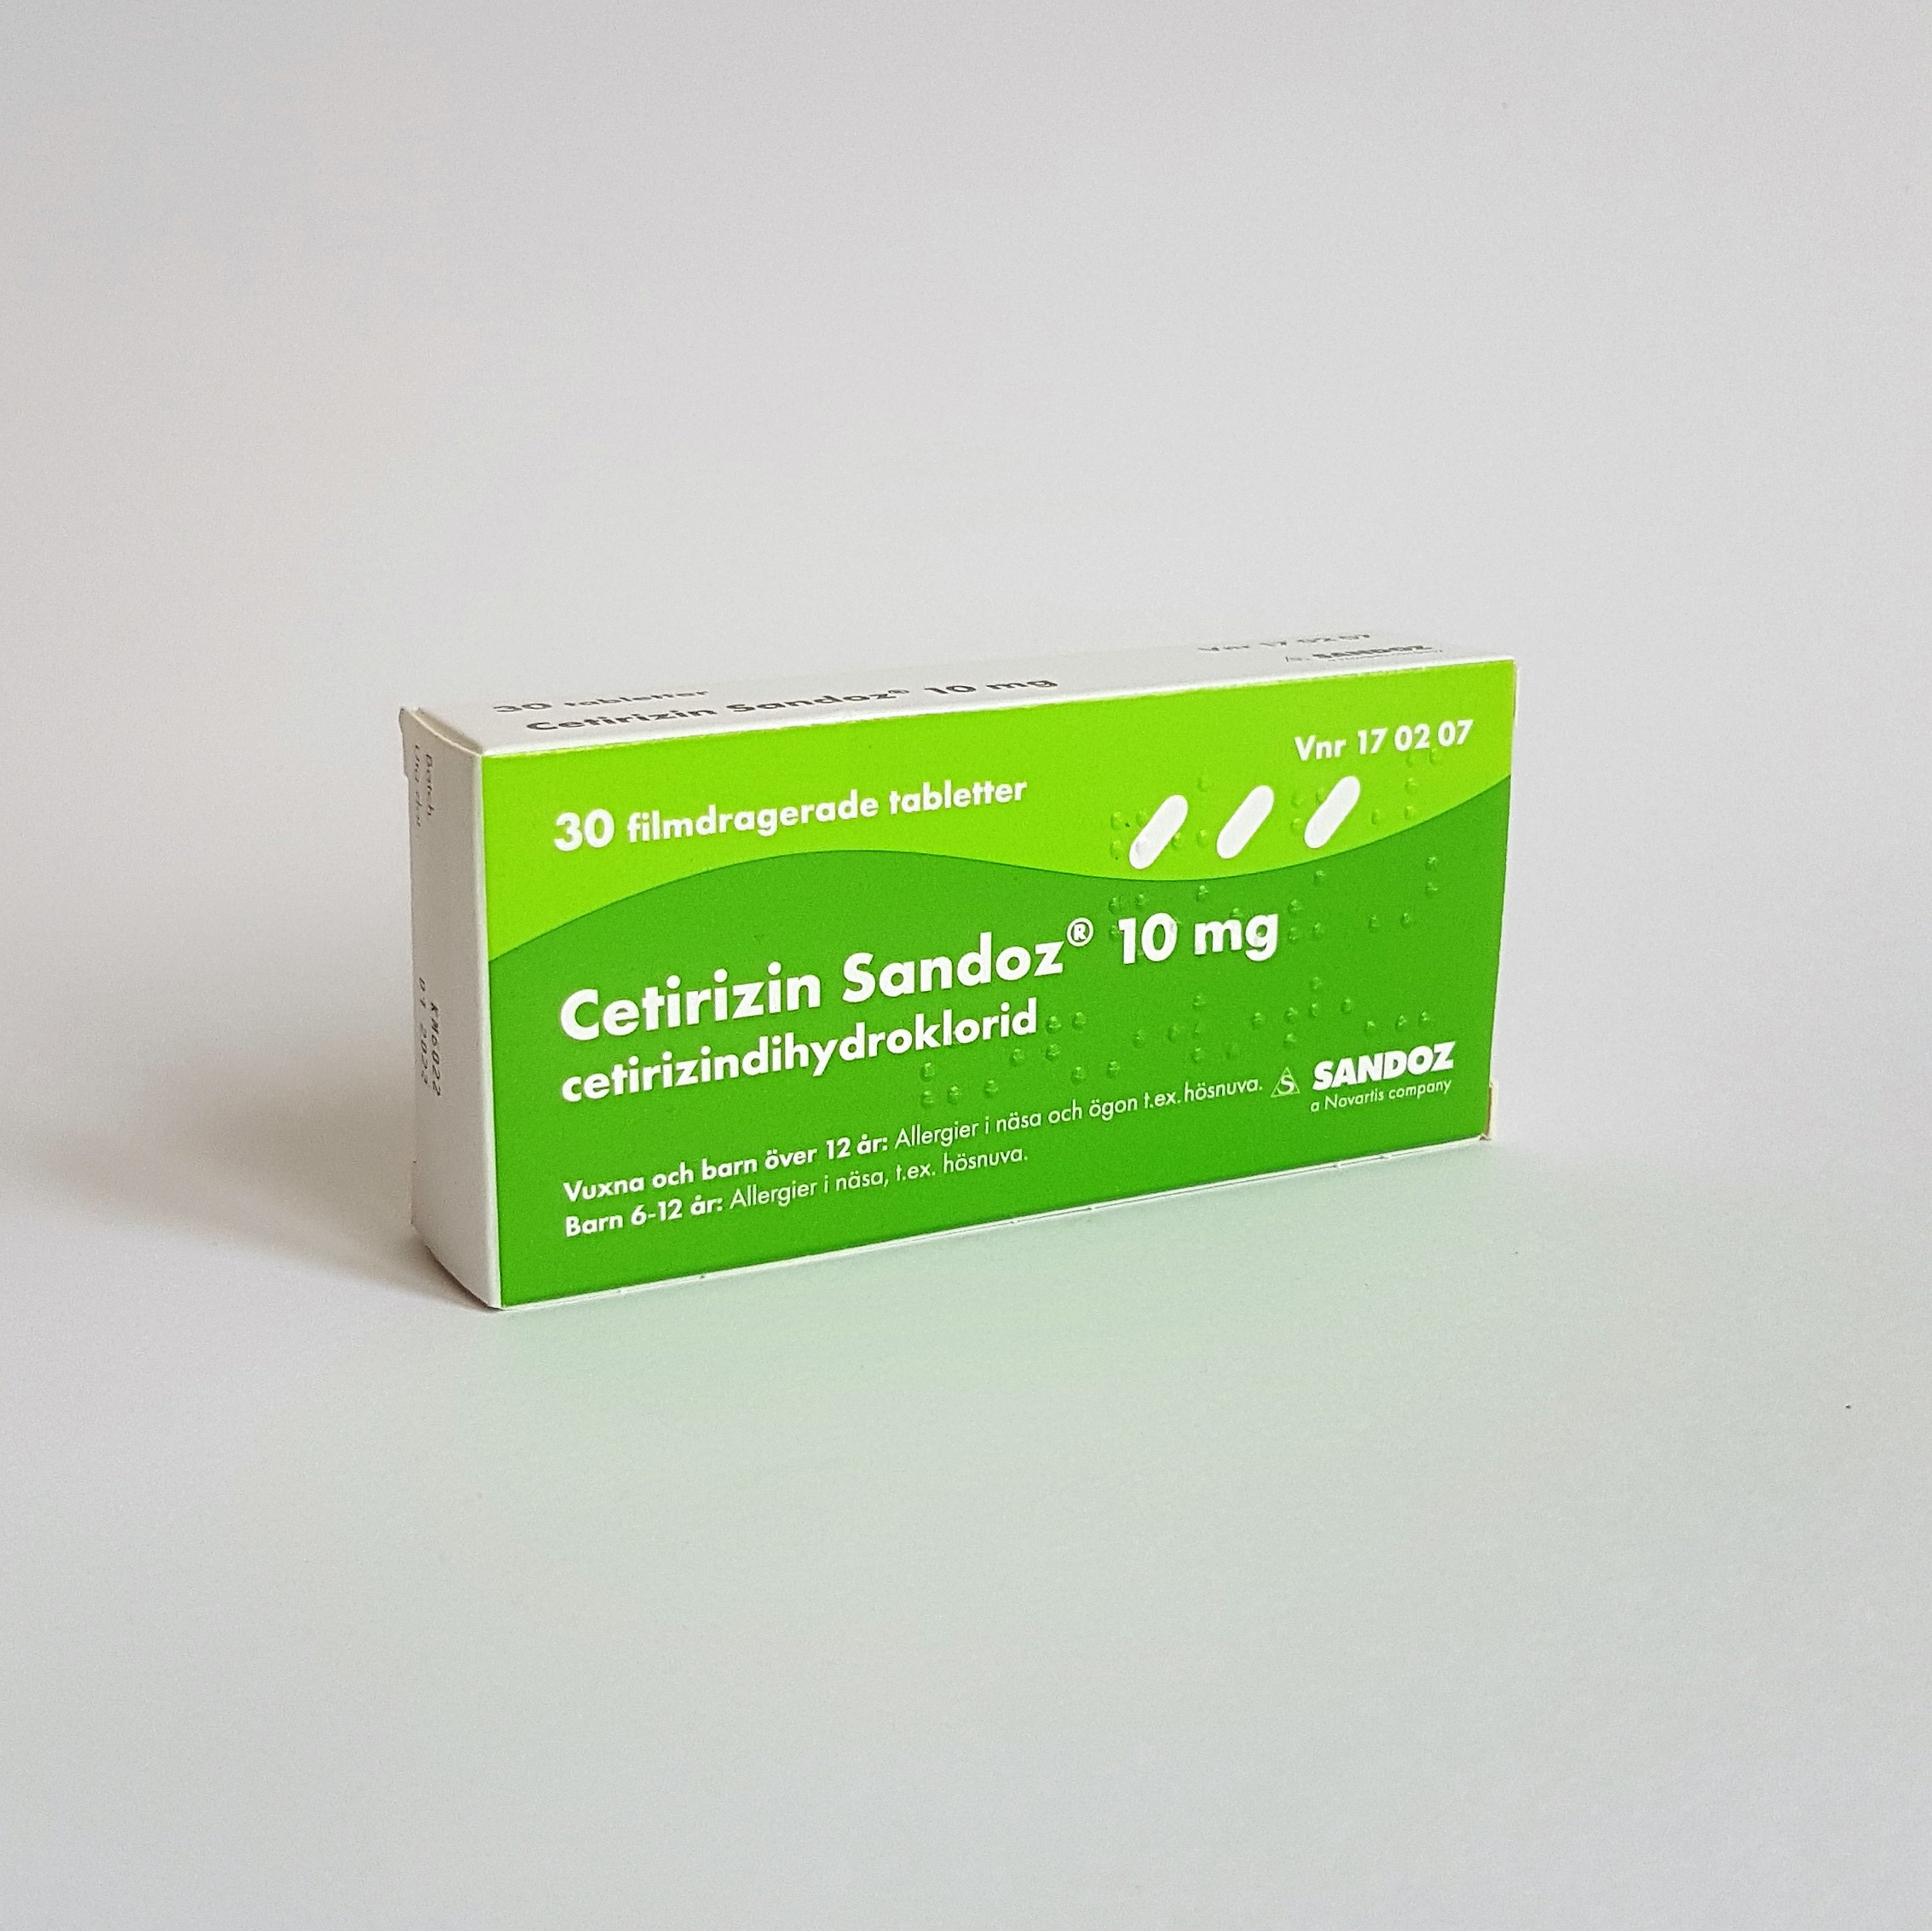 Кардиолип 10 цена отзывы. Цетиризин Сандоз. Цетиризин 30. Цетиризин 10 мг Индия. Цетиризин обл.